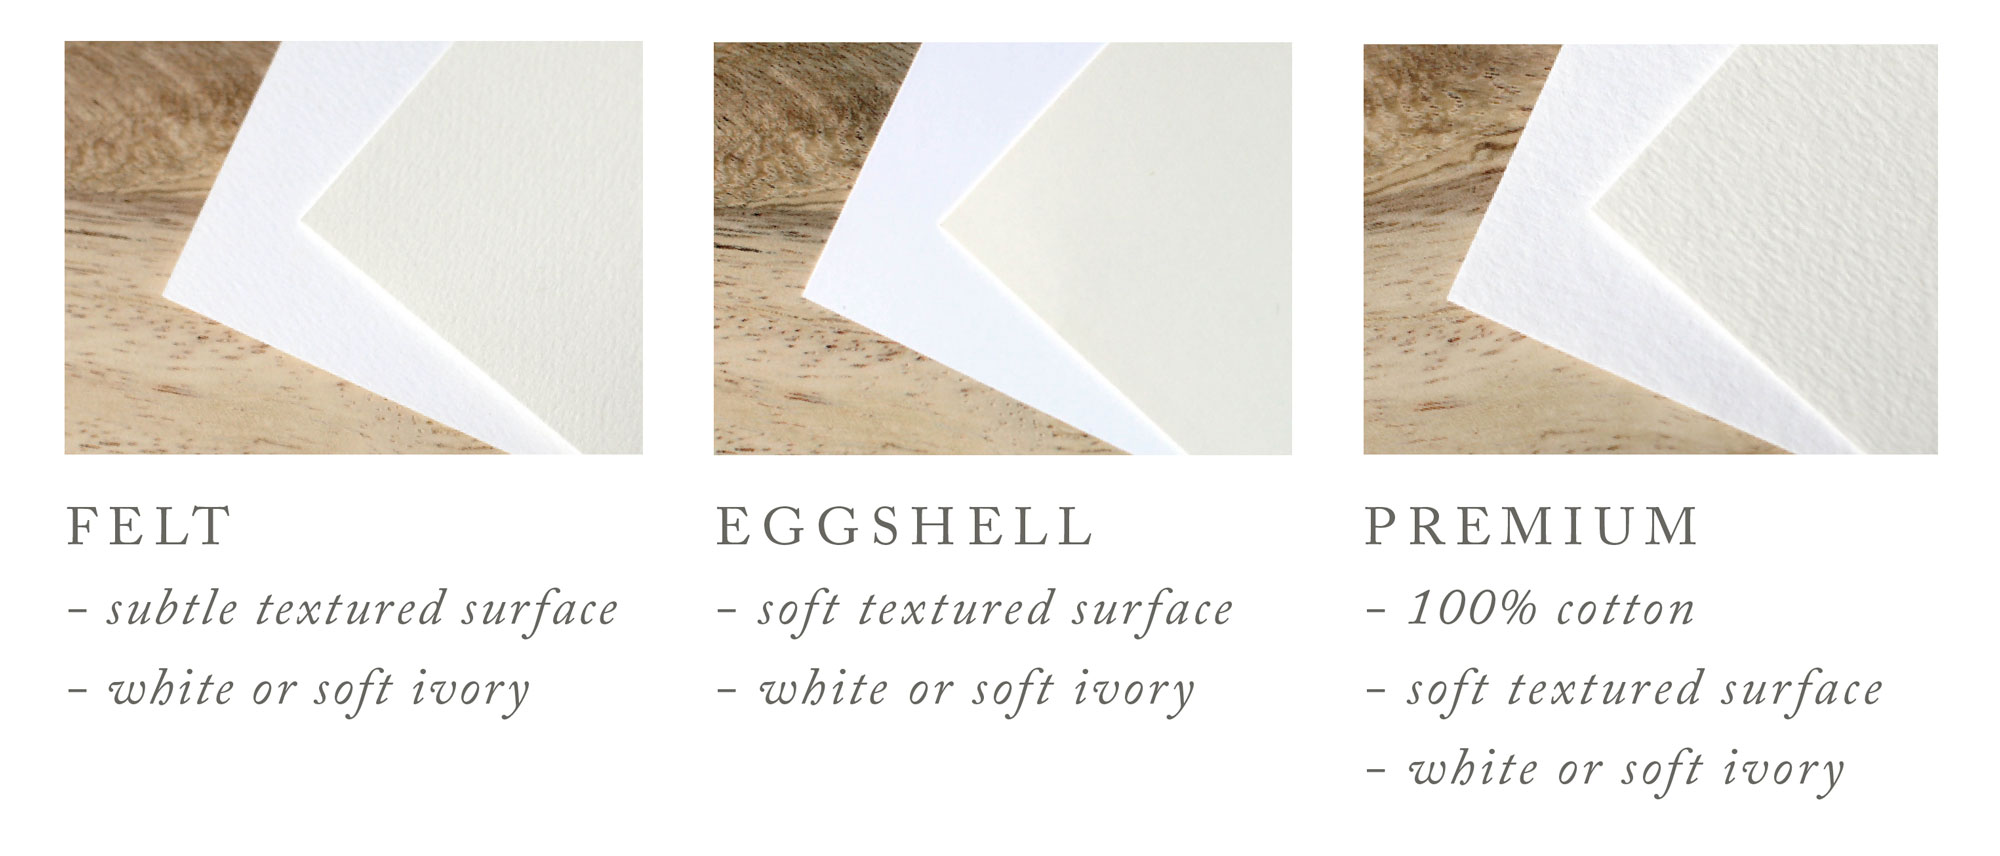 Felt, Eggshell, and Premium Cotton Paper